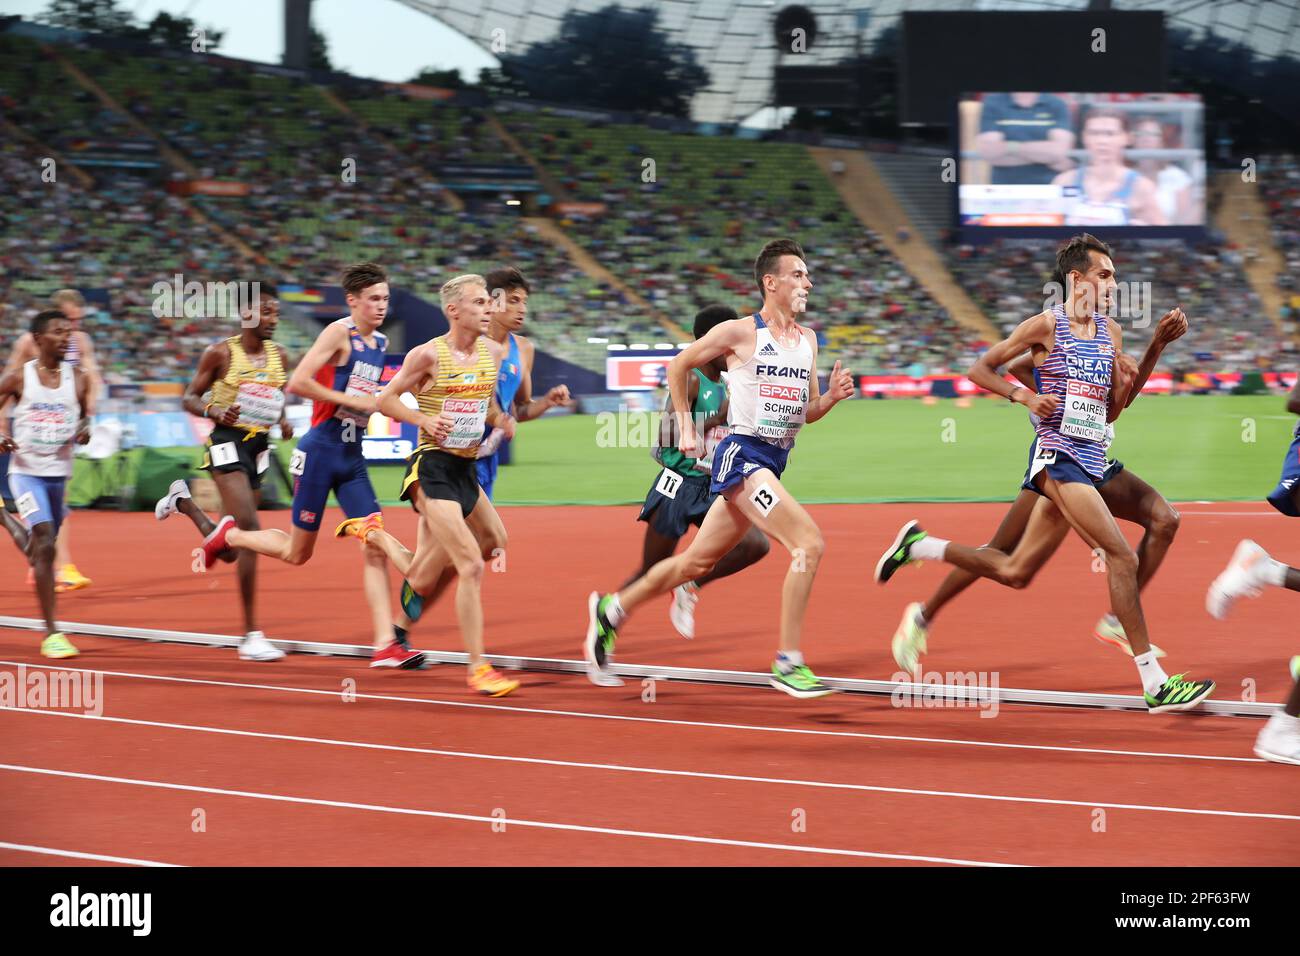 Yann SCHRUB nella finale 10000m al Campionato europeo di Atletica 2022 Foto Stock